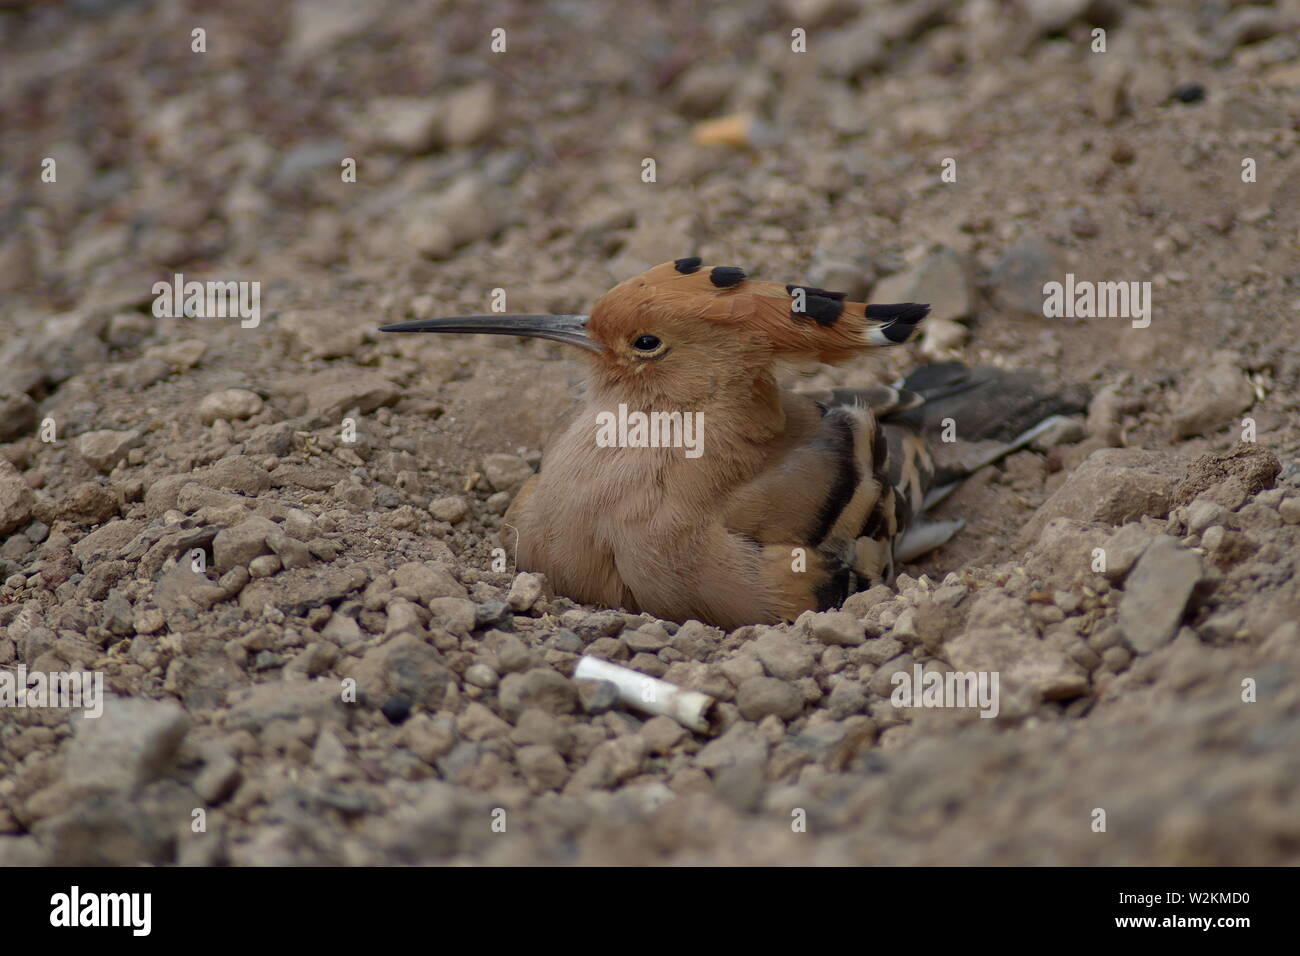 Abubilla Bird se sentaron en el suelo en Tenerife, España Foto de stock